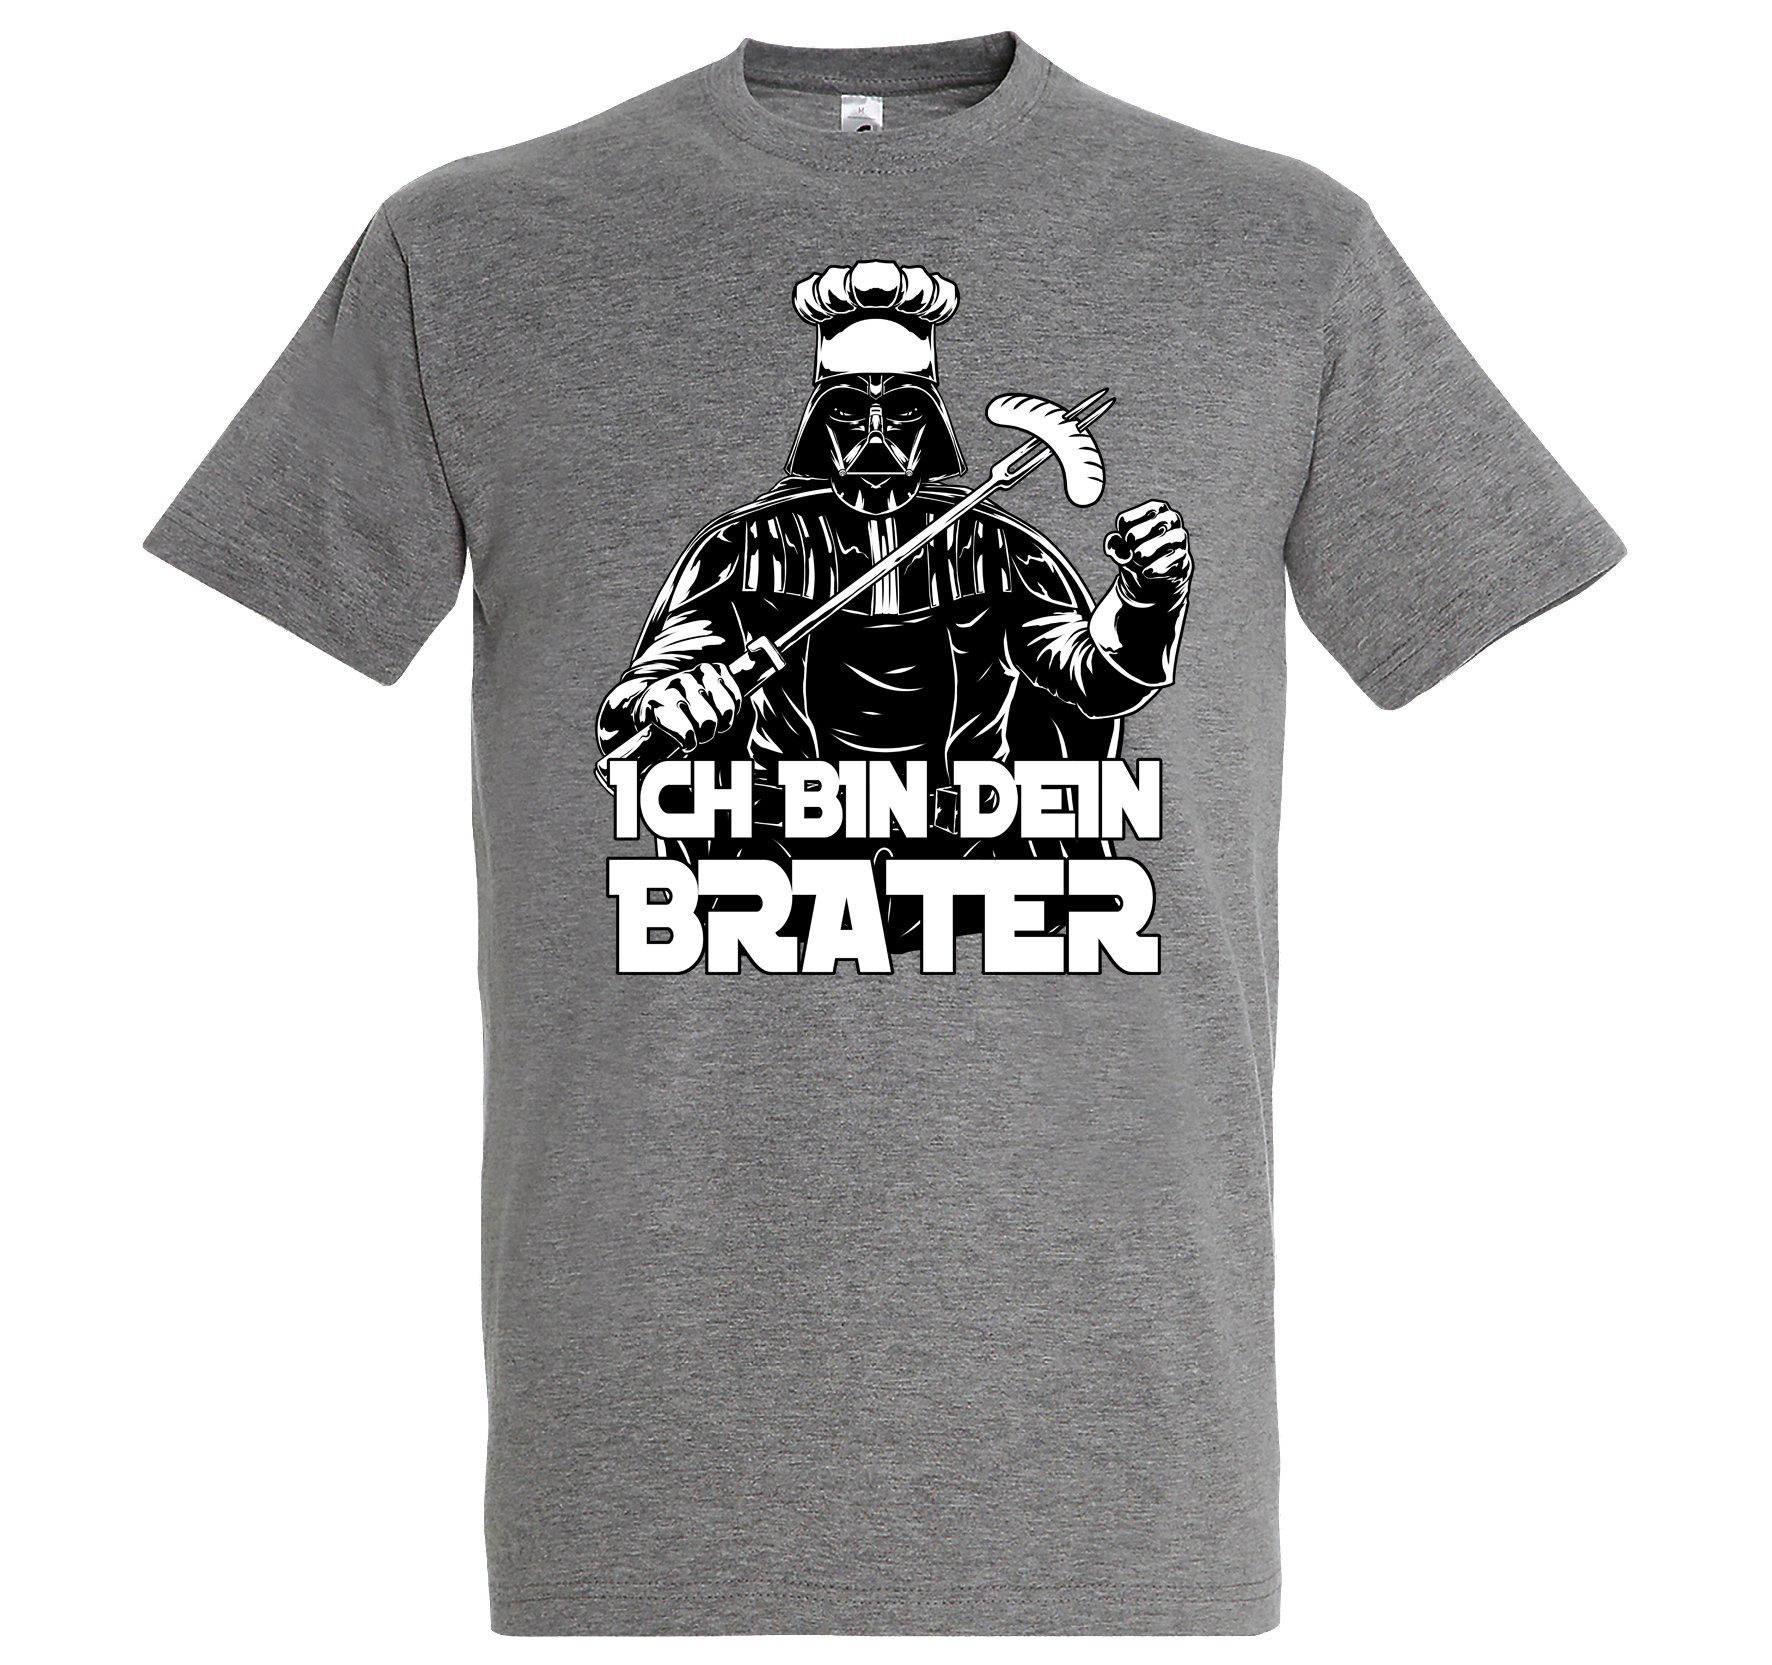 Youth Designz T-Shirt "Ich bin Brater" Herren T-Shirt mit lustigem Spruch Grau